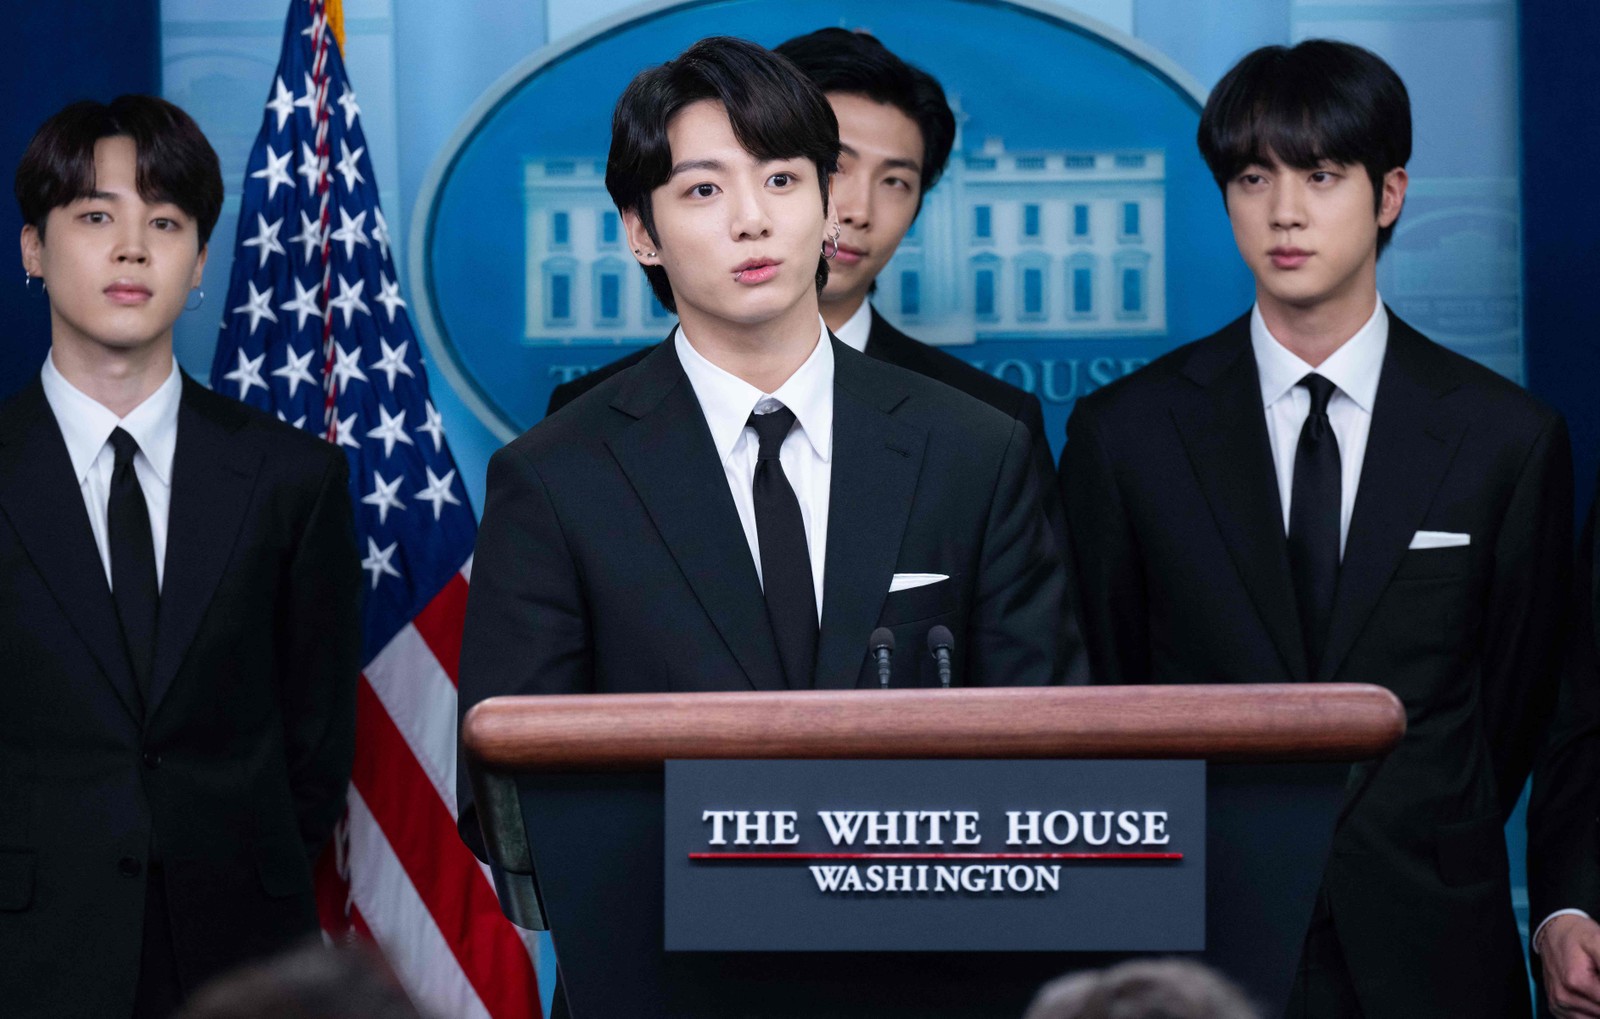 Jungkook, membro mais novo do BTS, discursa na Casa Branca em 31 de maio de 2022. Atrás dele, aparecem Jimin, RM e Jin. — Foto: SAUL LOEB / AFP